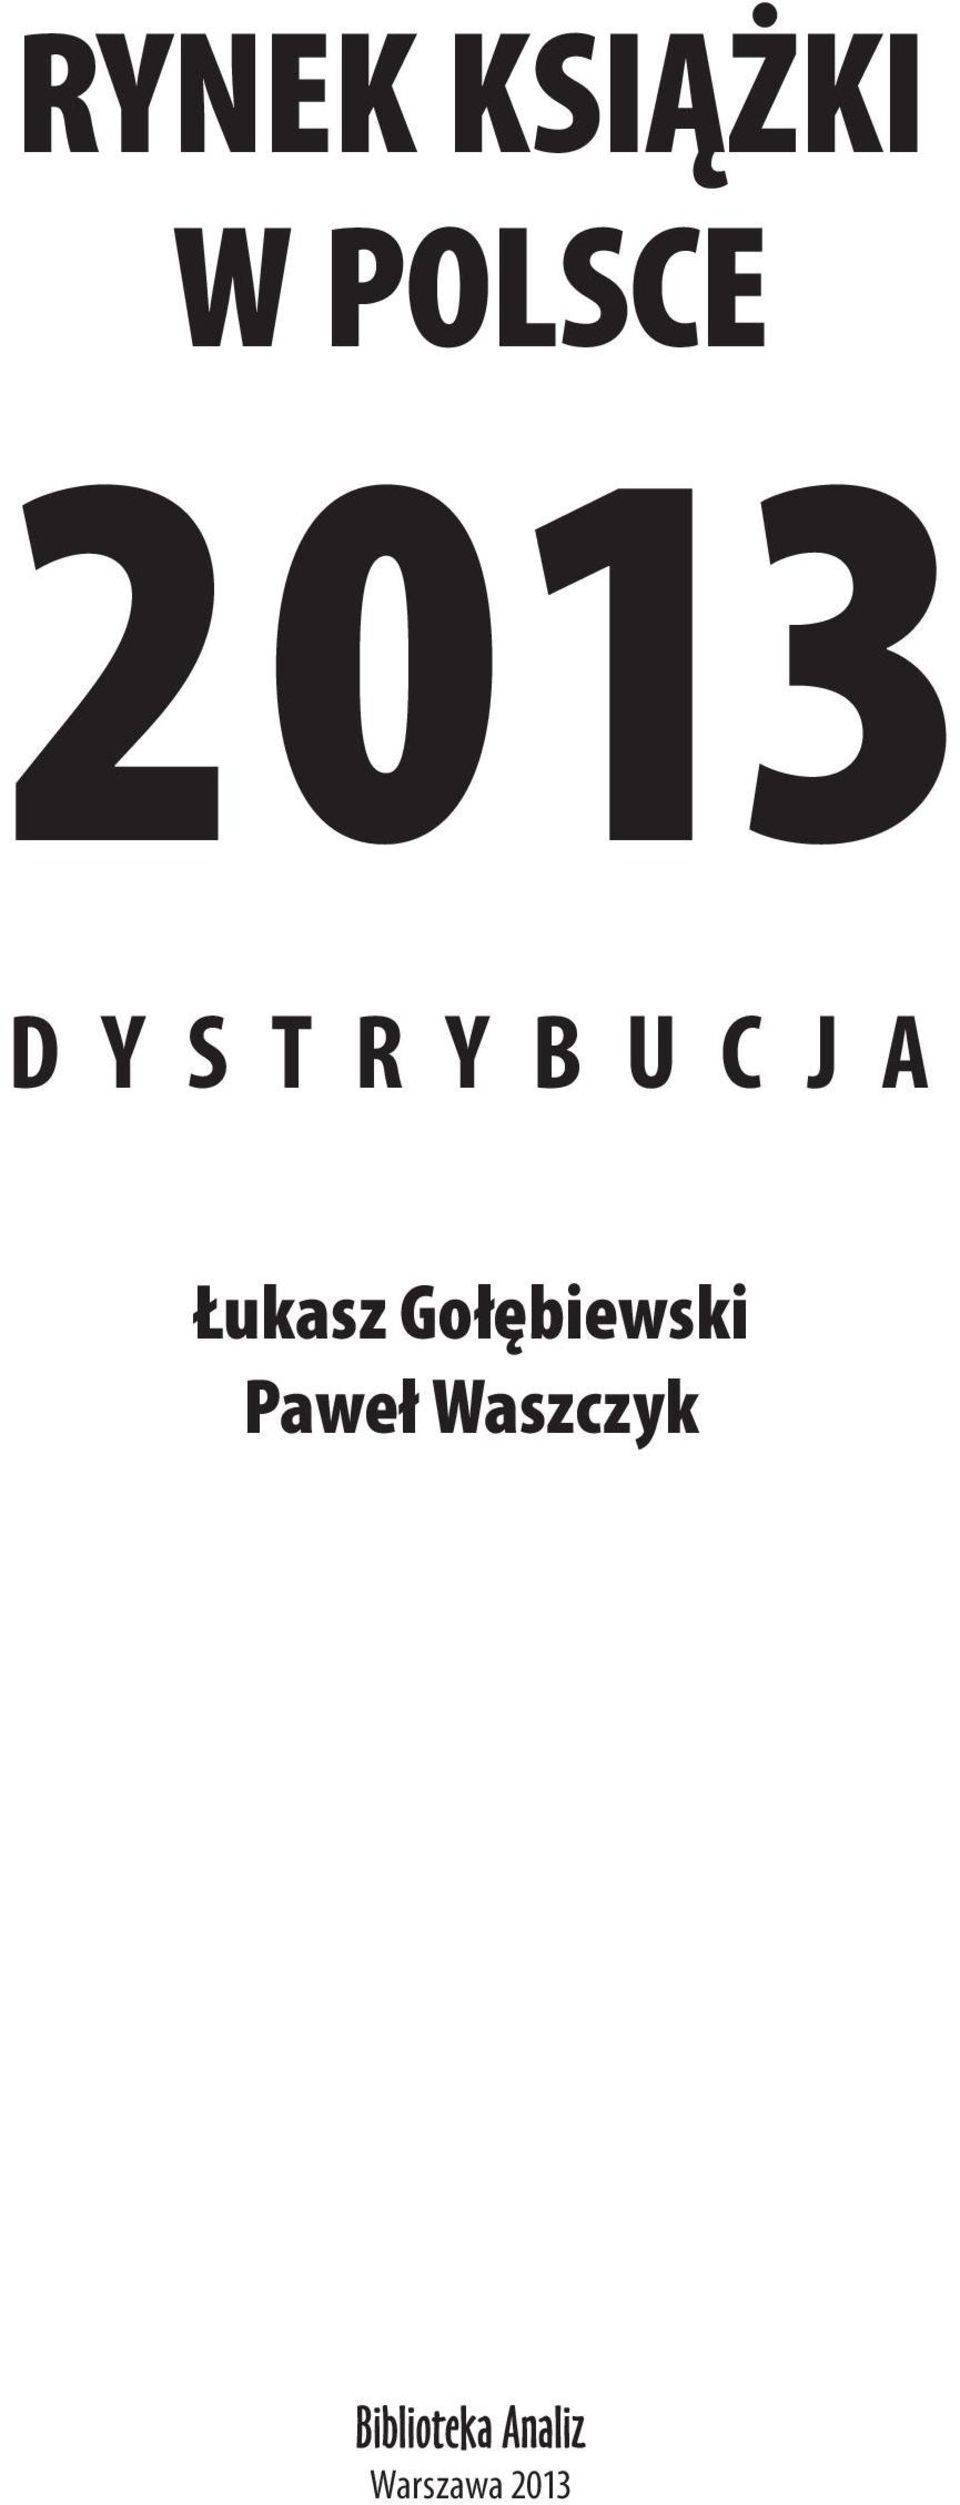 A Łukasz Gołębiewski